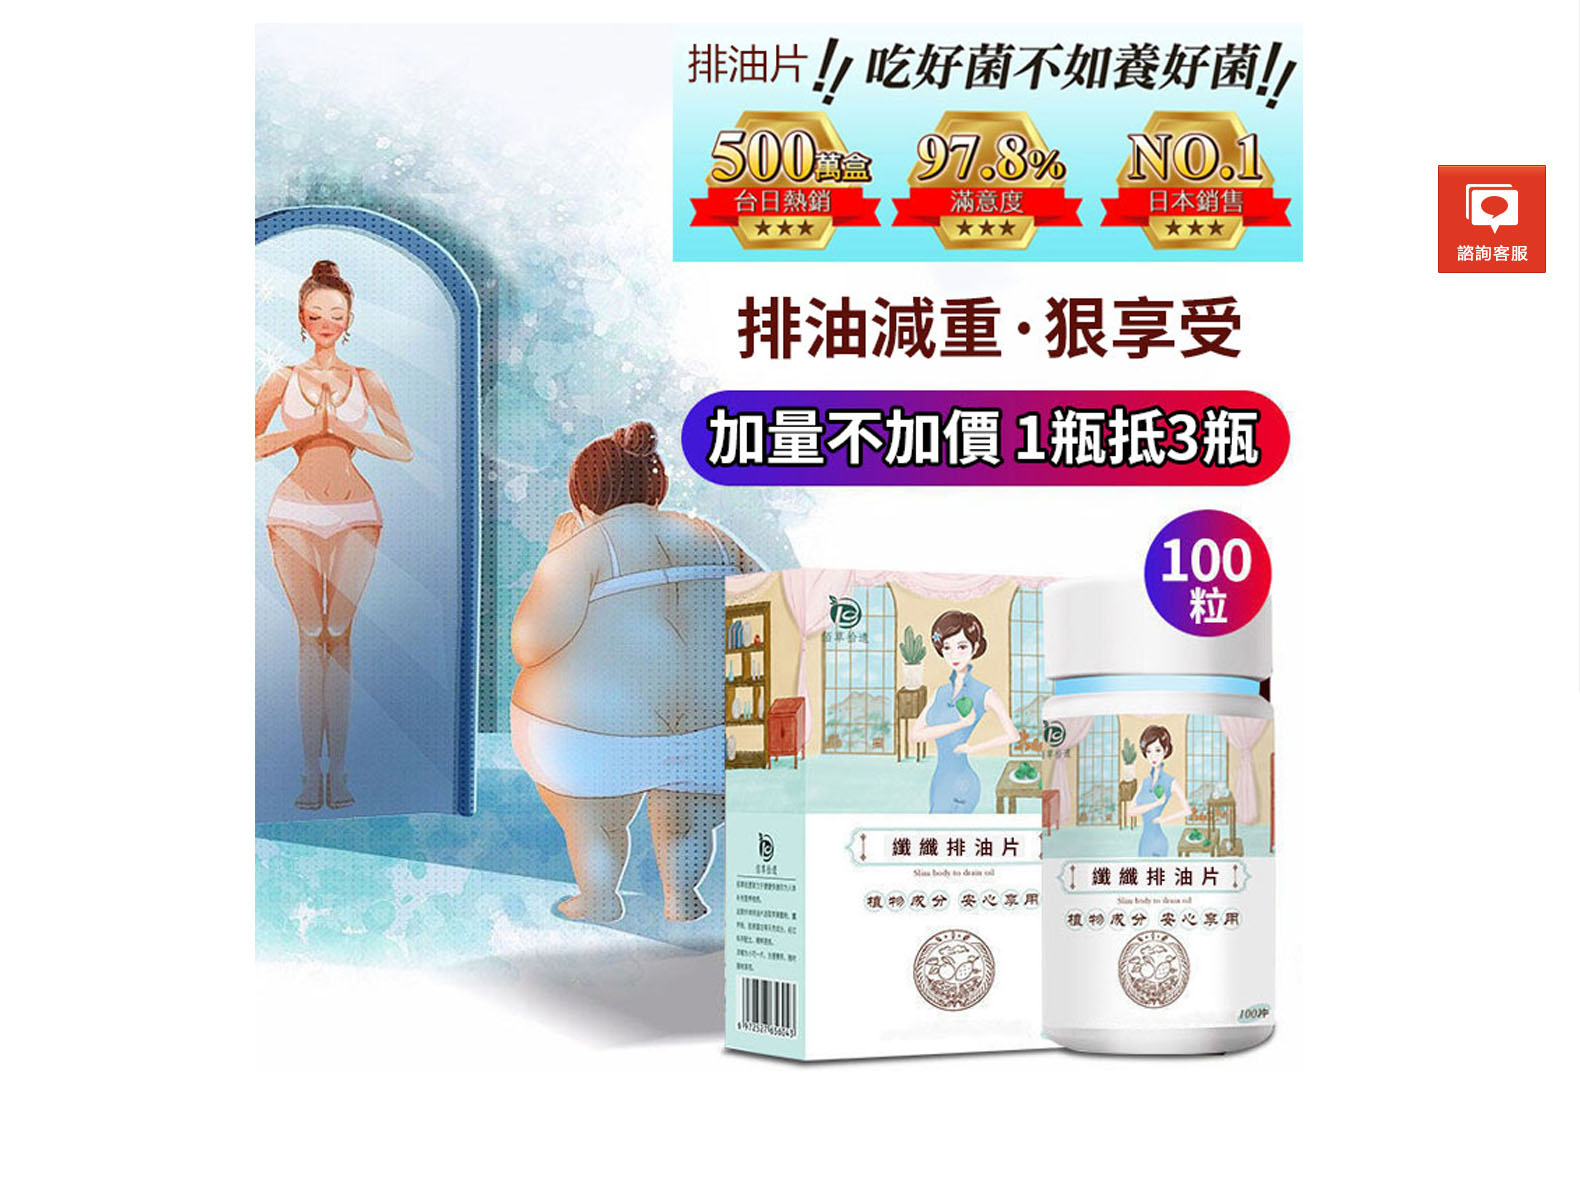 韓國Calobye瘦身燃脂丸專賣店-瘦身產品推薦,最有效的減肥方法